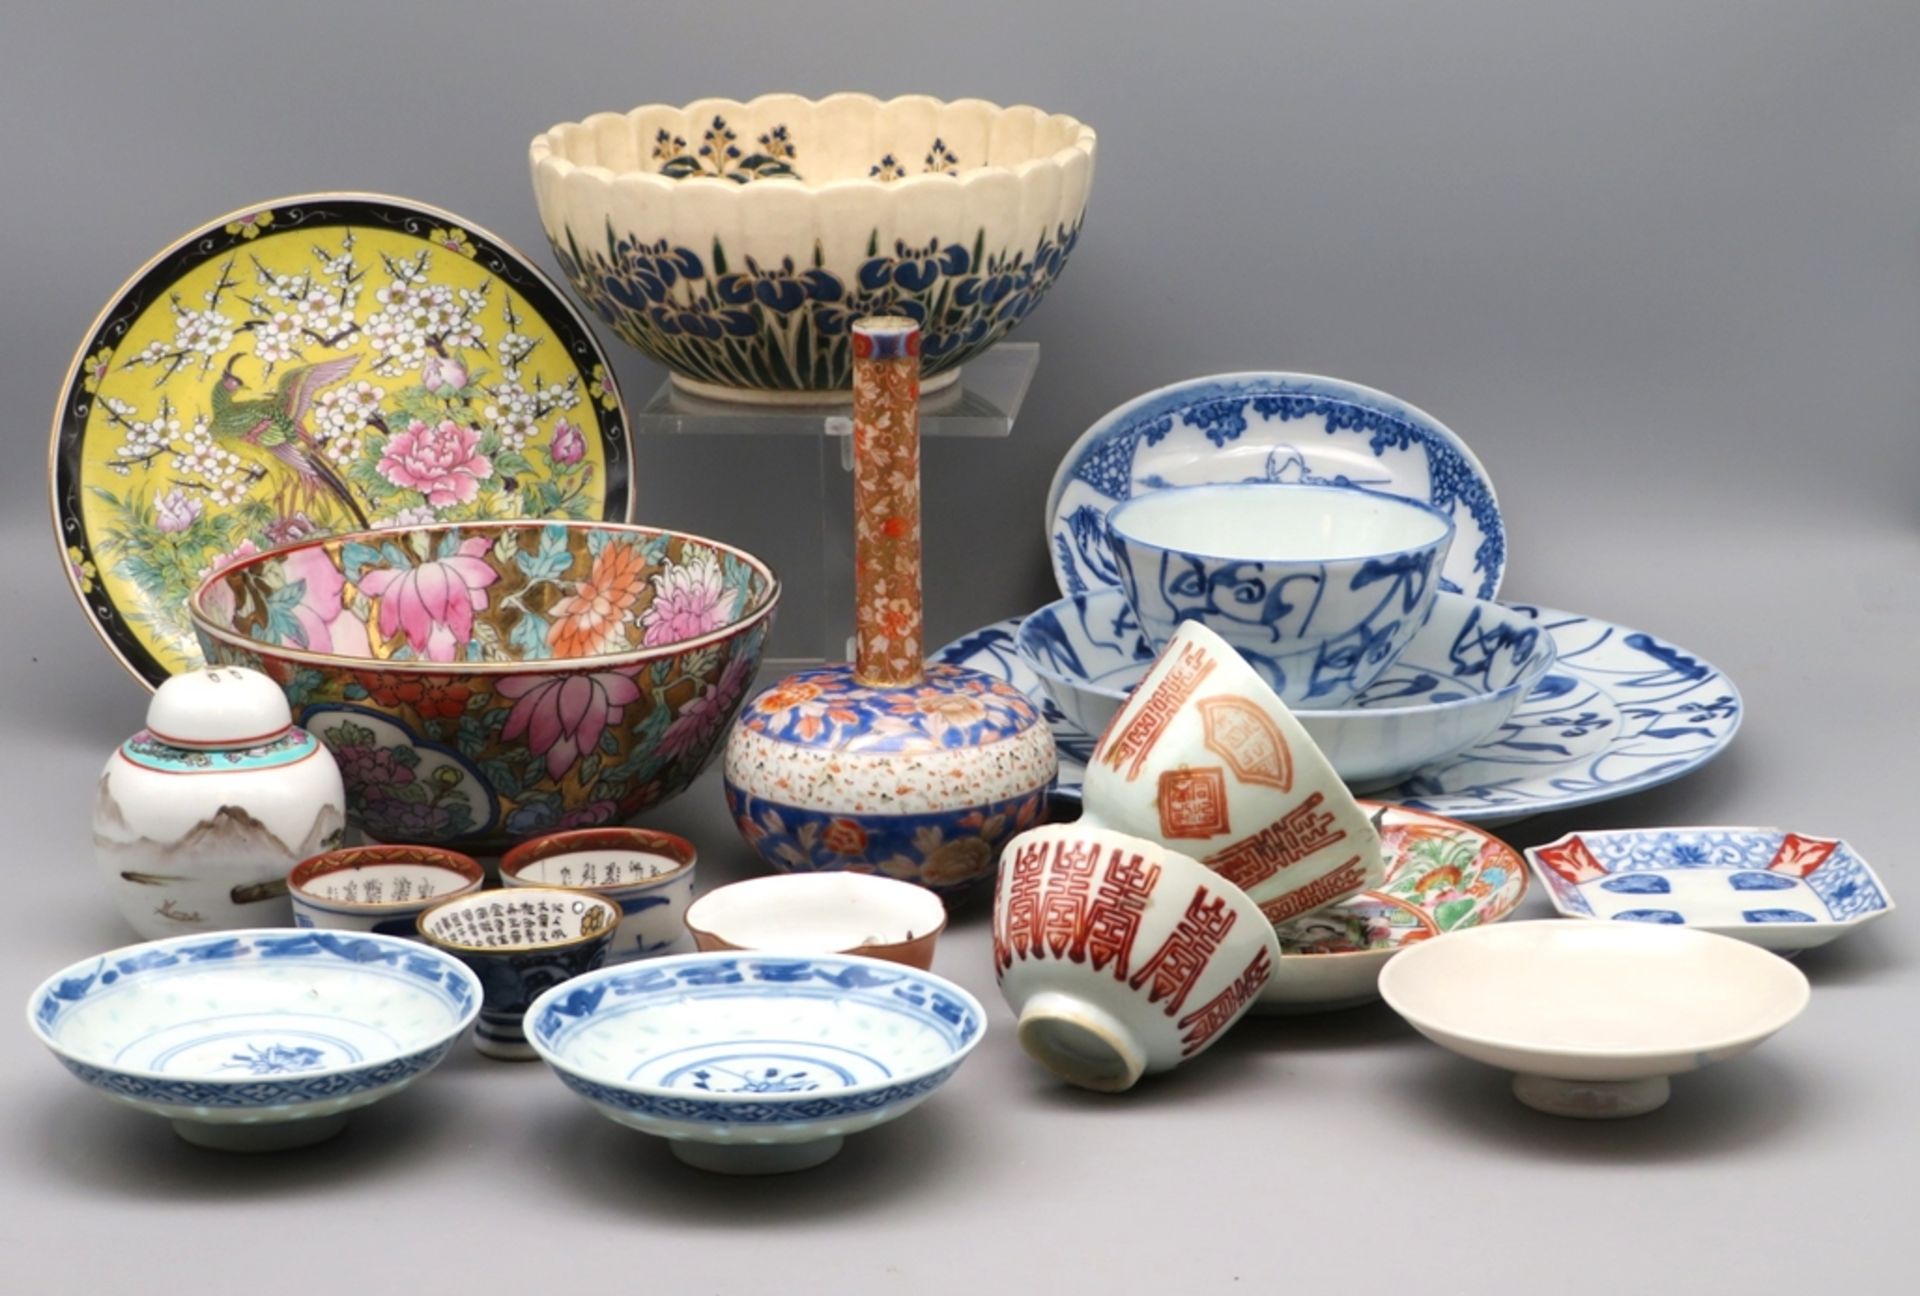 21 teiliges Konvolut diverser Porzellan-Objekte, China und Japan.